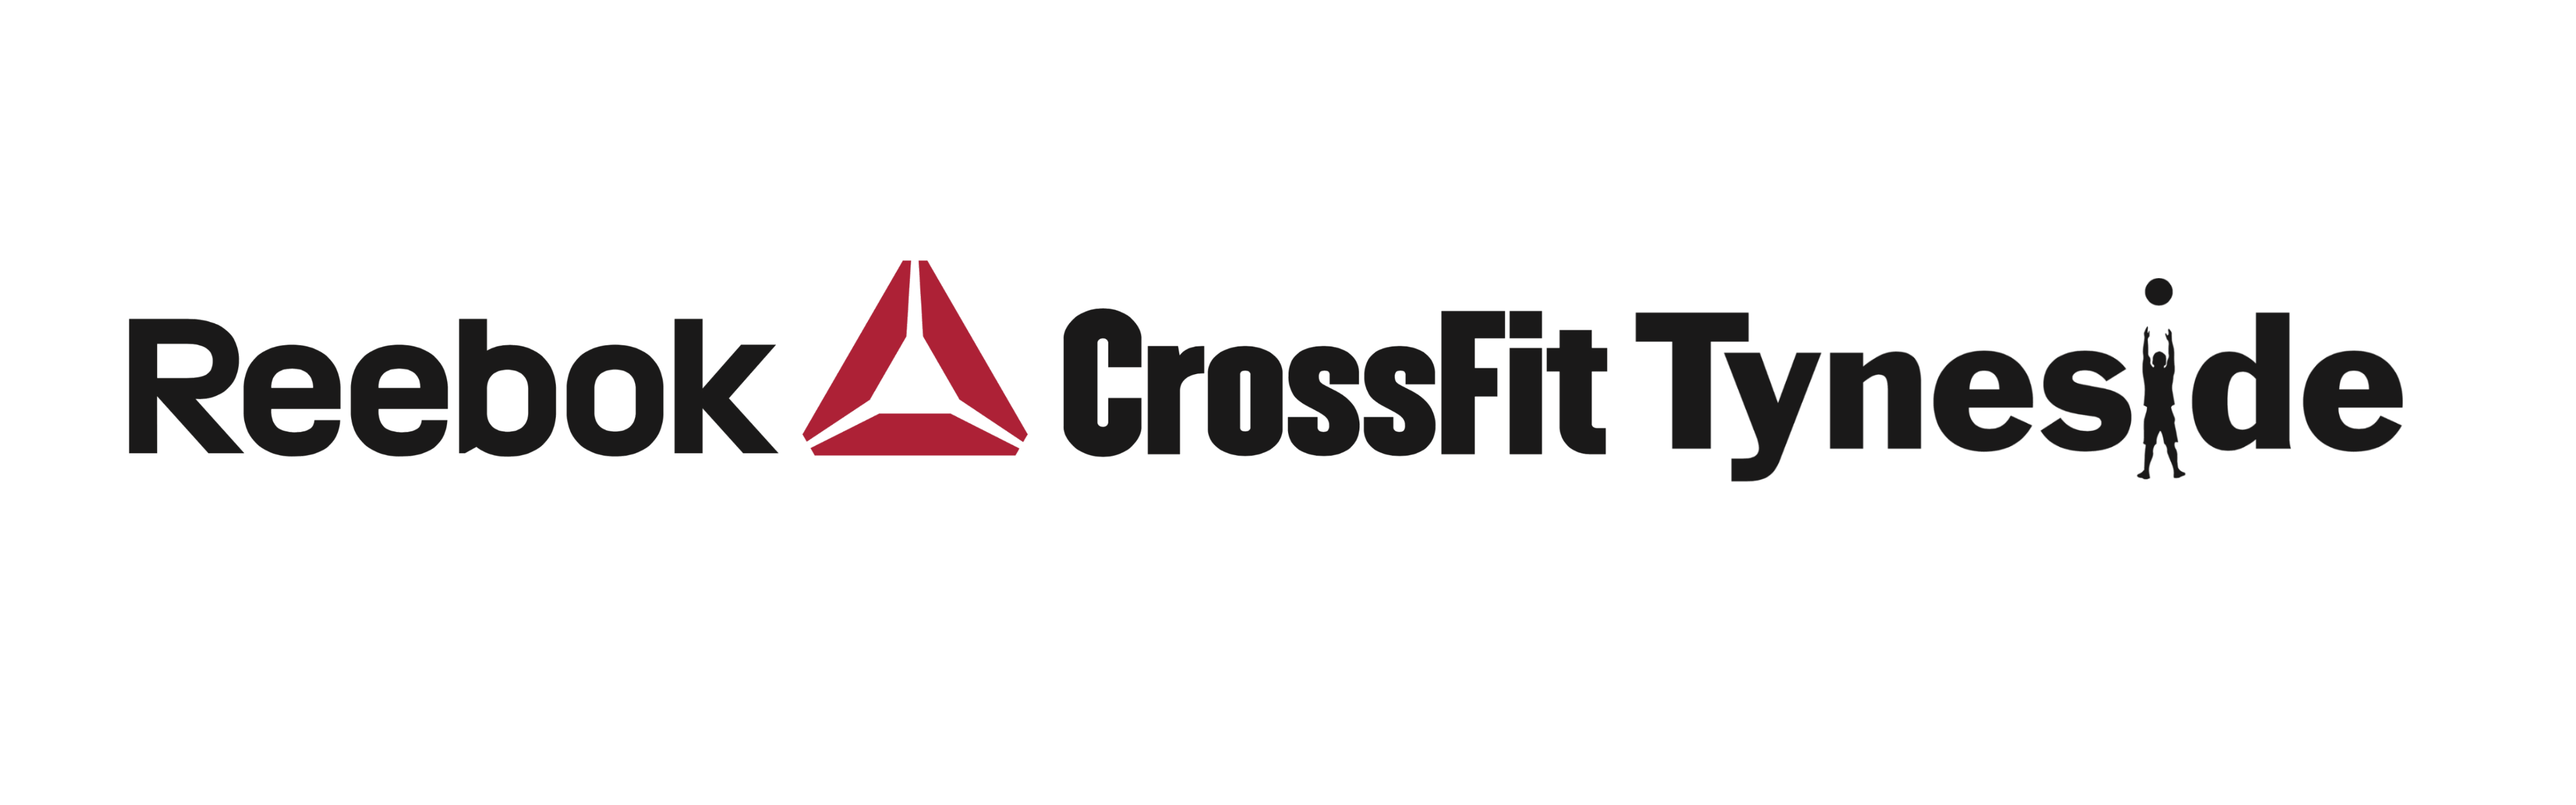 Reebok CrossFit Triangle Logo - Reebok CrossFit Tyneside | The Sport of Fitness